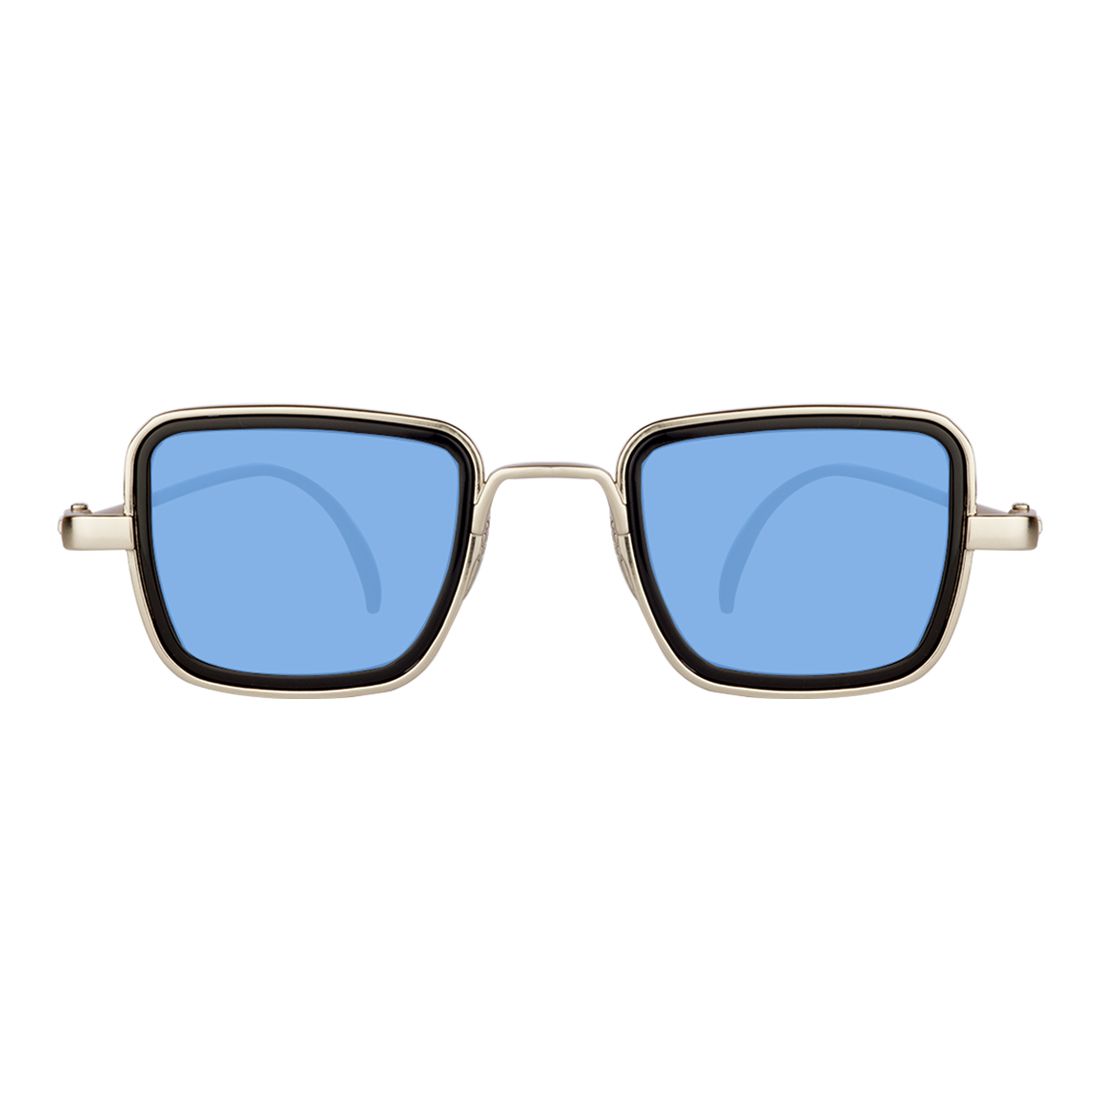 Zyaden Ocean Blue Rectangle Sunglasses Sun242 Buy Zyaden Ocean Blue Rectangle